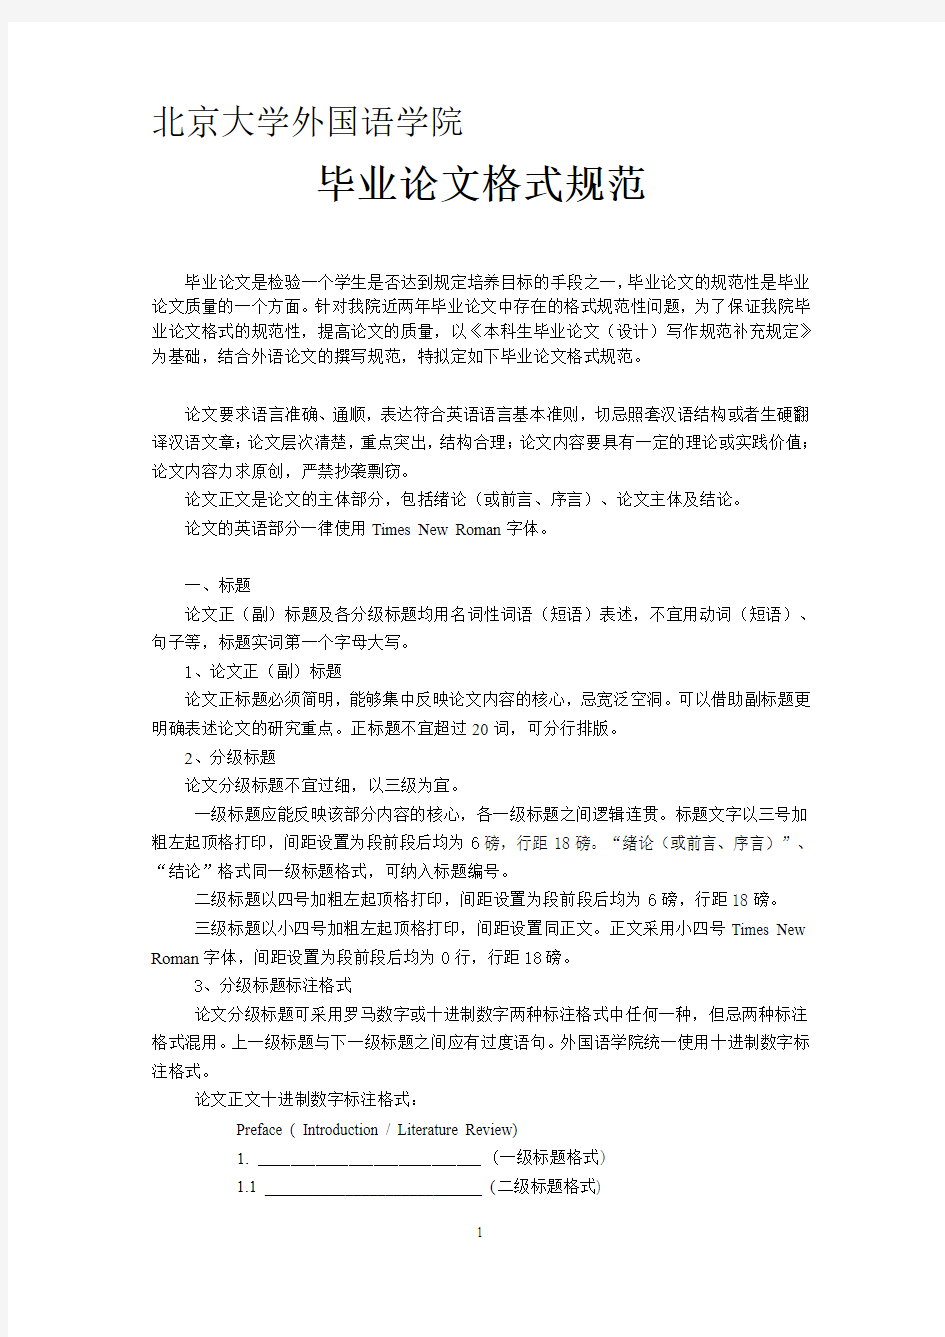 北京大学最新英语专业毕业论文格式要求及范本 最详细